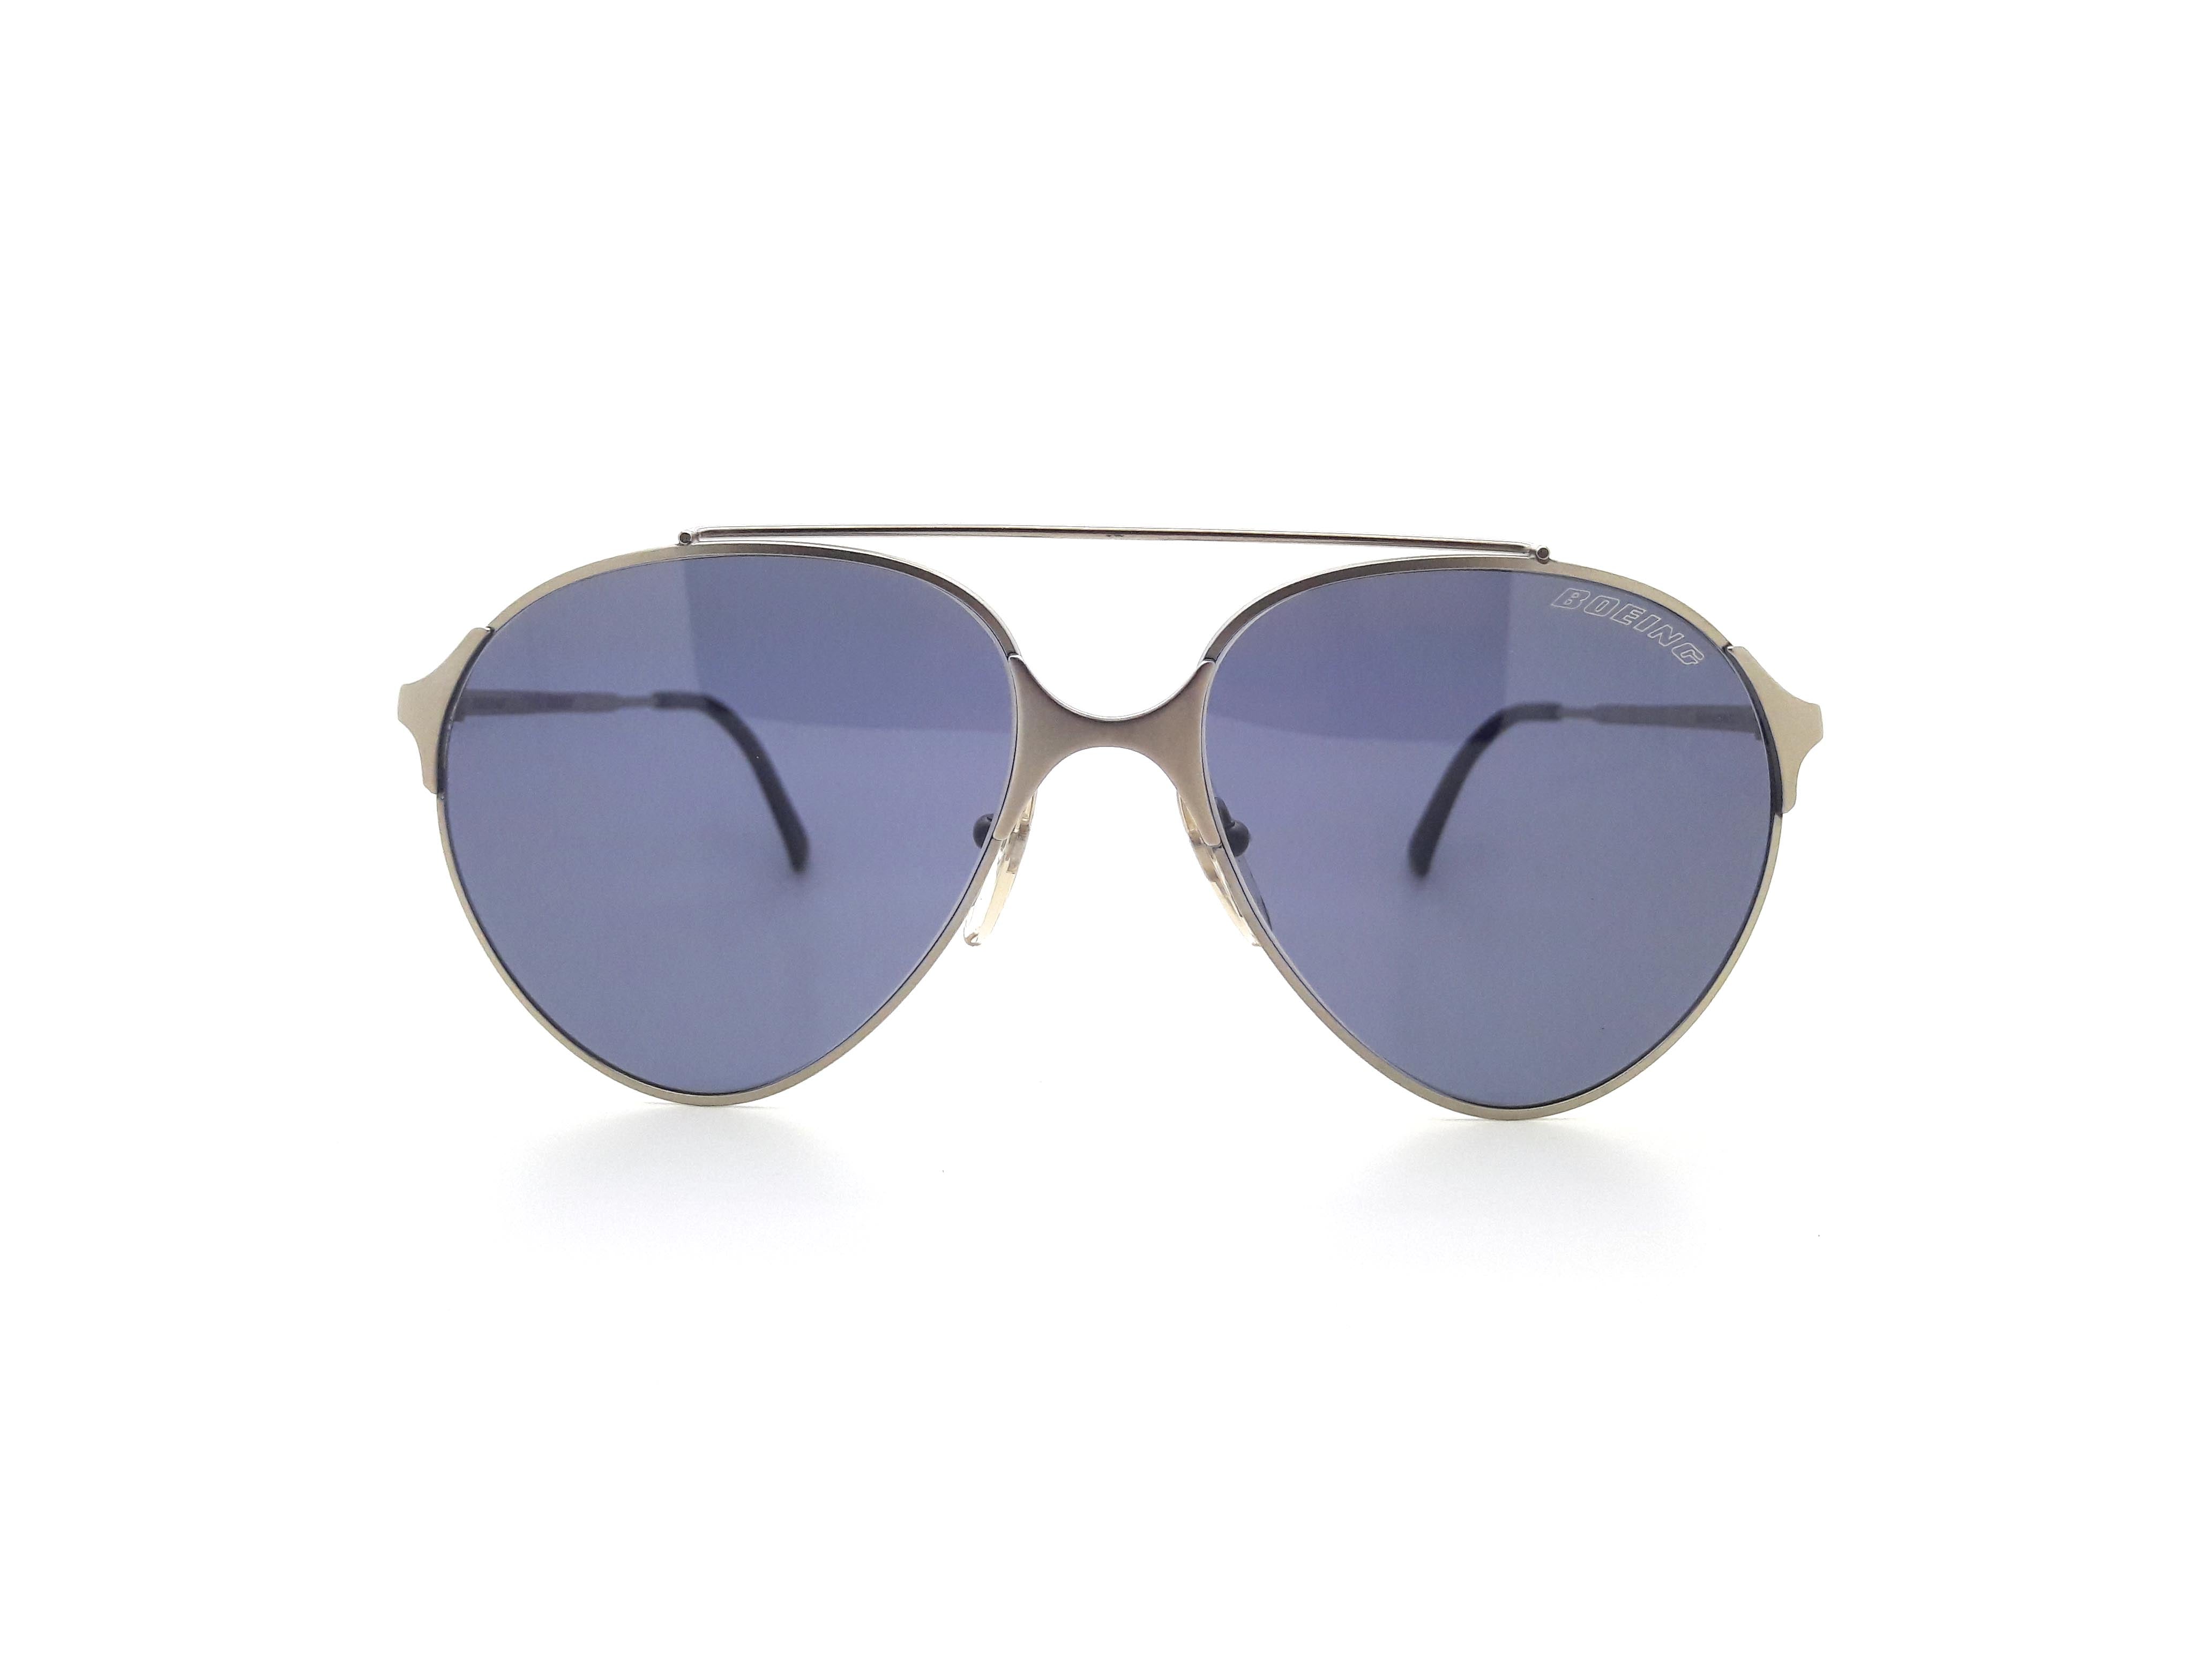 Boeing by Carrera 5710 70 Vintage Sunglasses – Ed & Sarna Vintage Eyewear